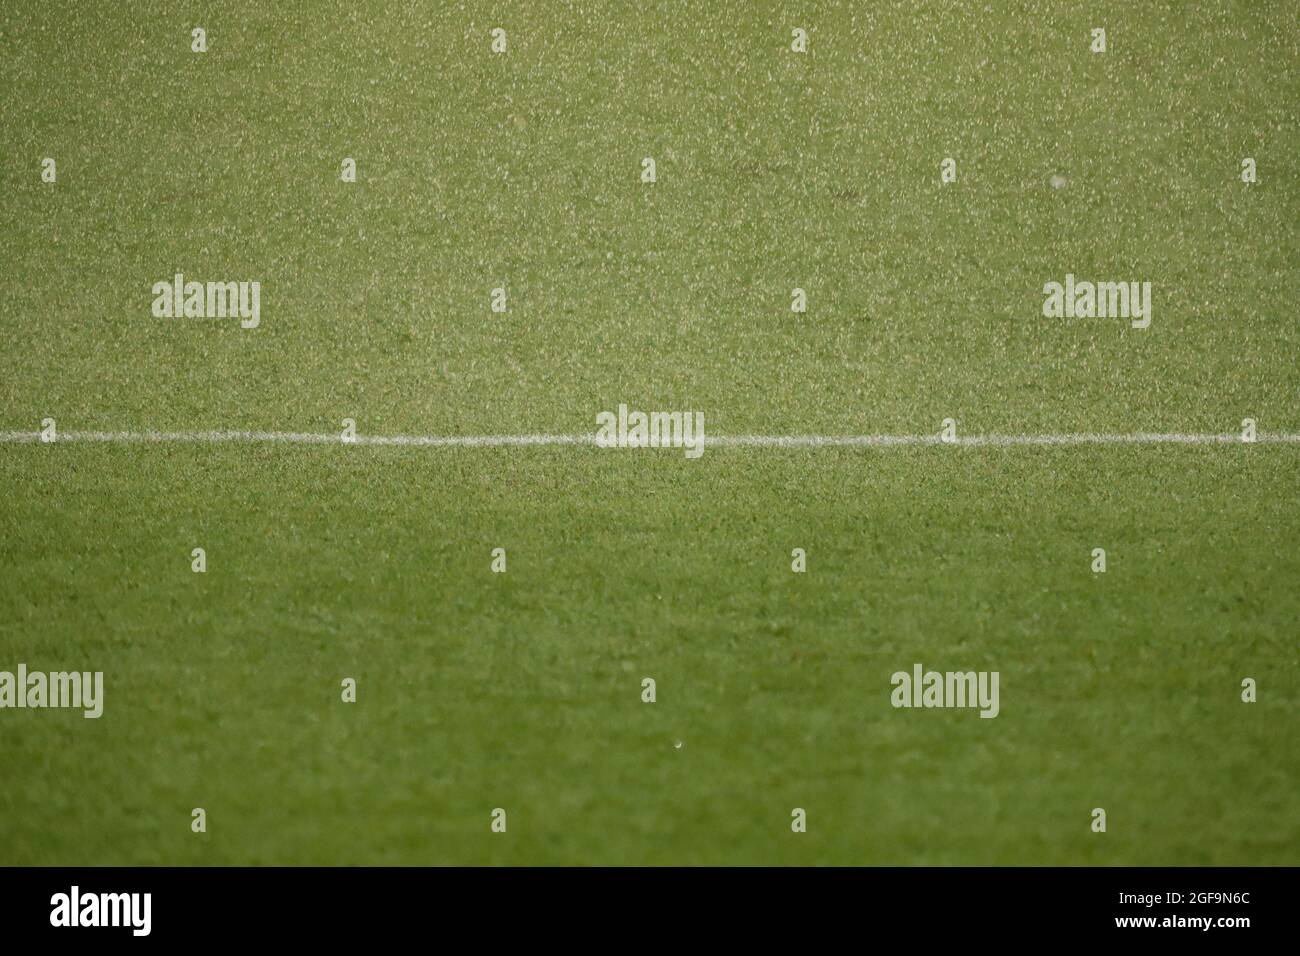 Fußballfeld mit Kunstrasen, die auf der Oberseite benetzt, mit einer weißen Linie Stockfoto